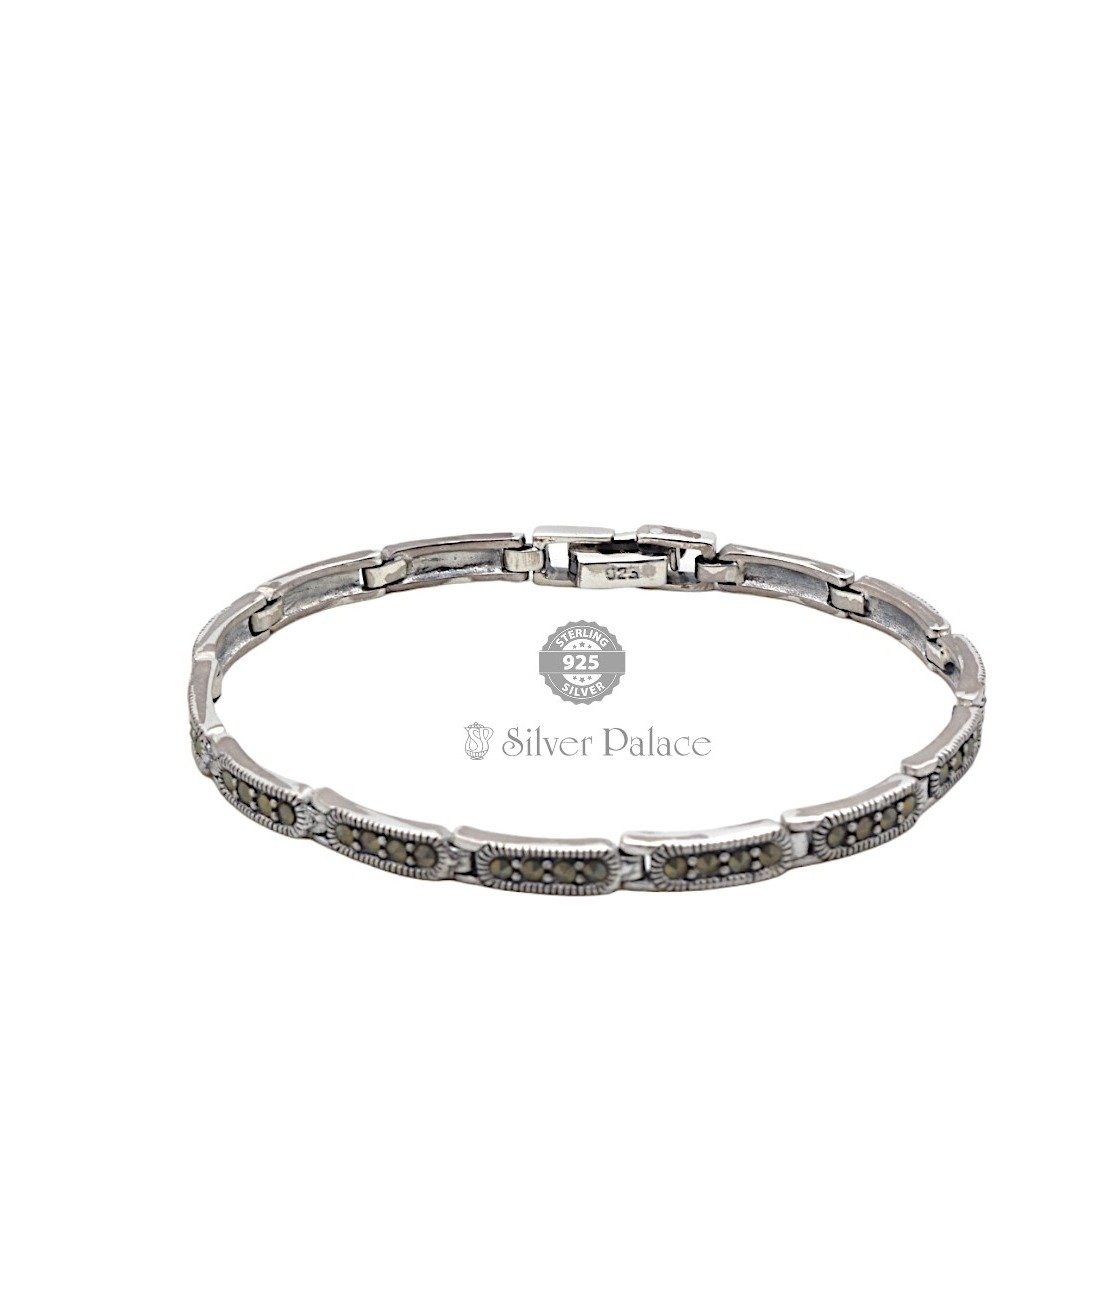 92.5 Oxidised Silver Bracelet for Girls